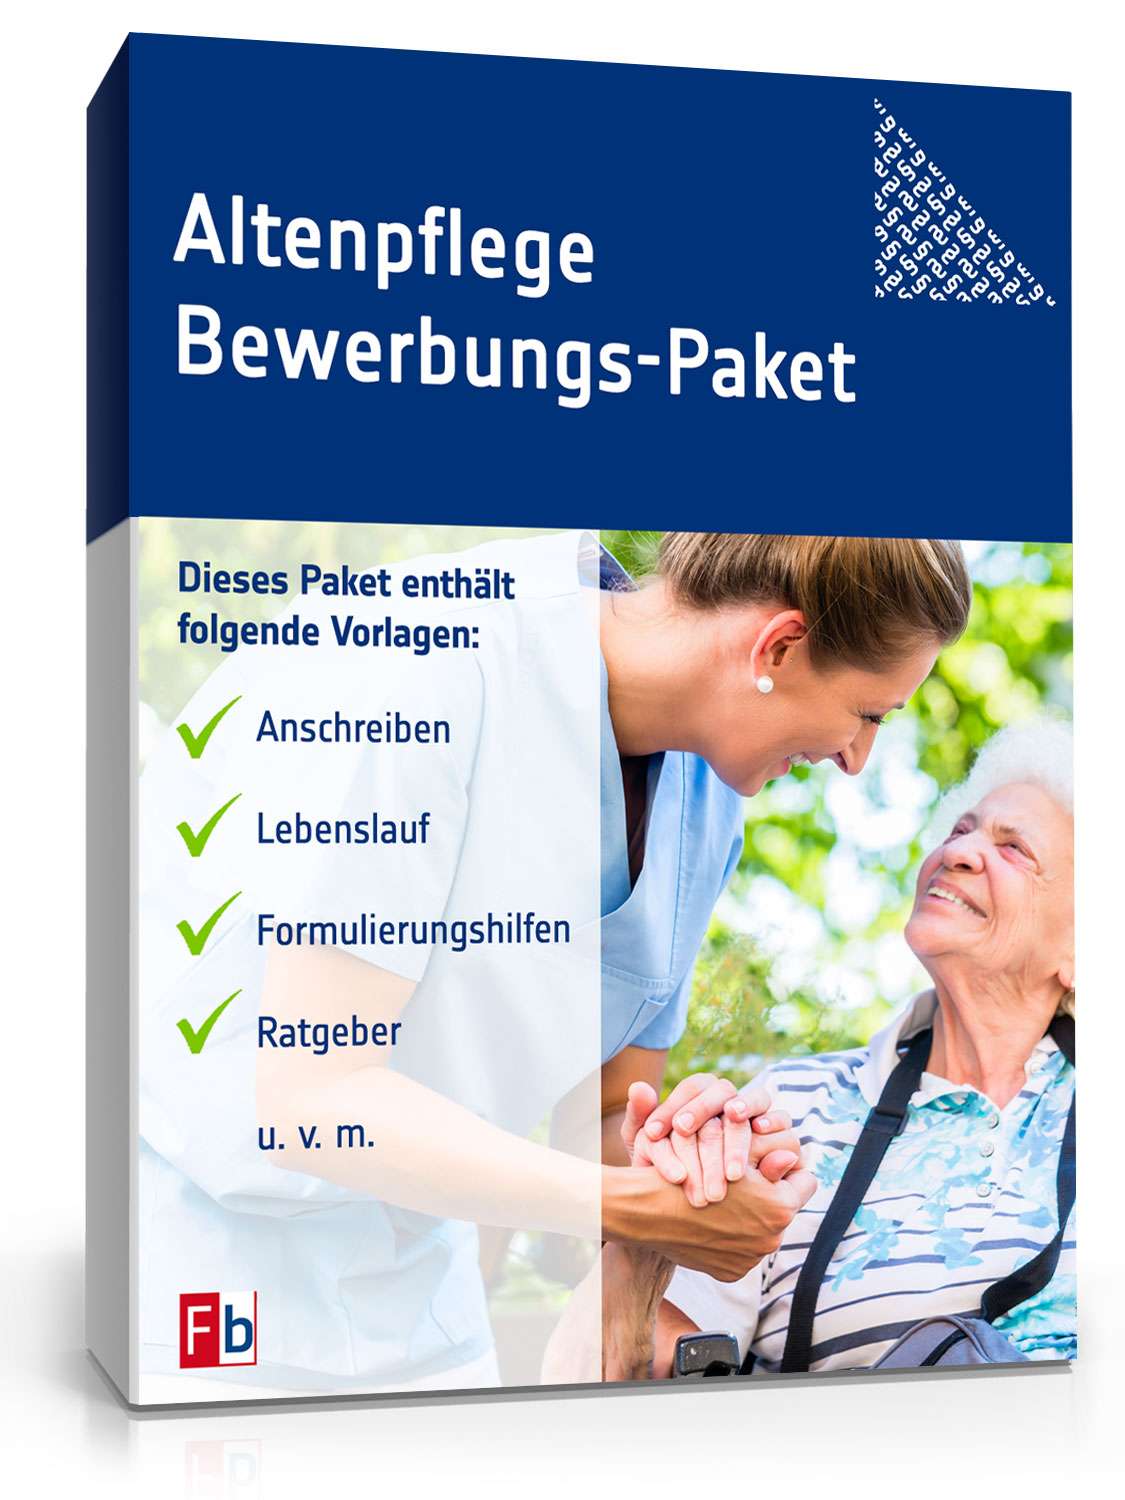 Hauptbild des Produkts: Bewerbungs-Paket Altenpflege